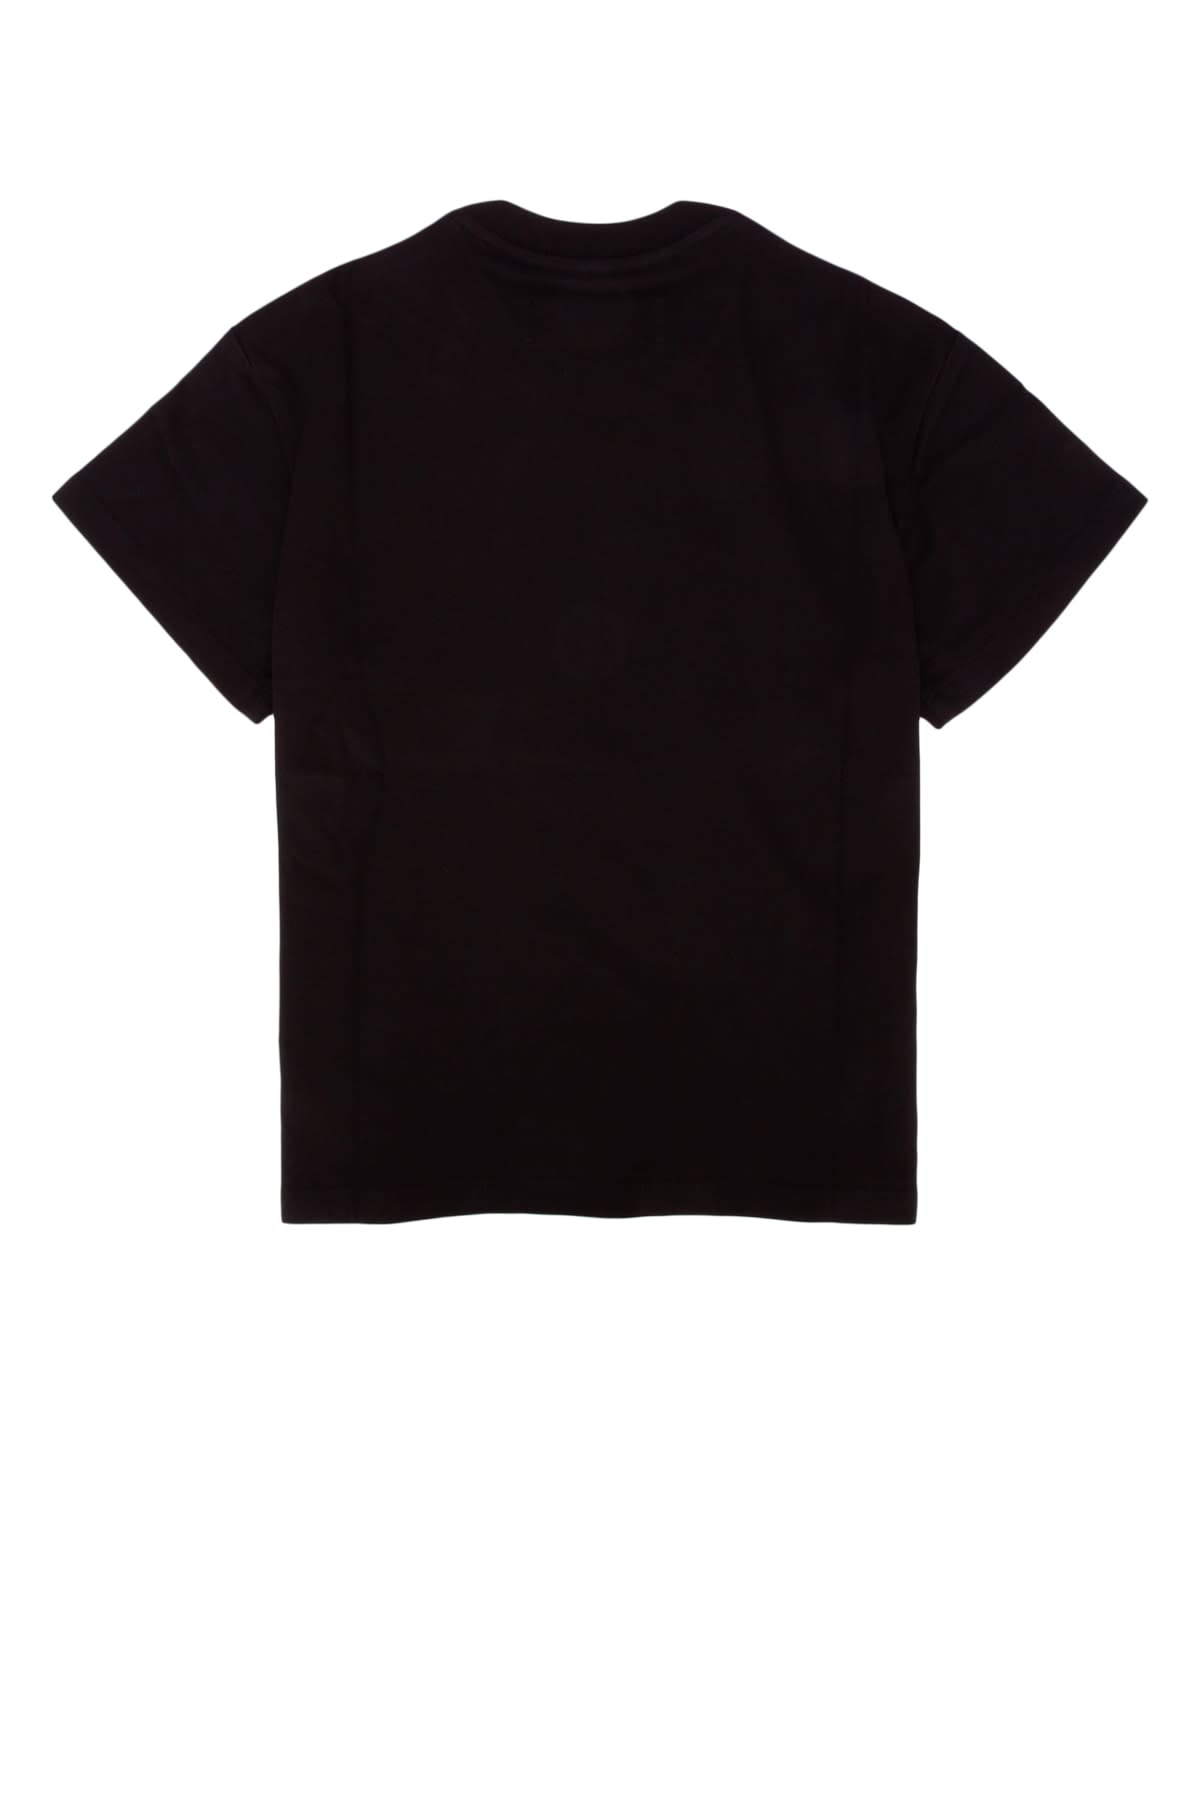 Amiri Kids' T-shirt In Black